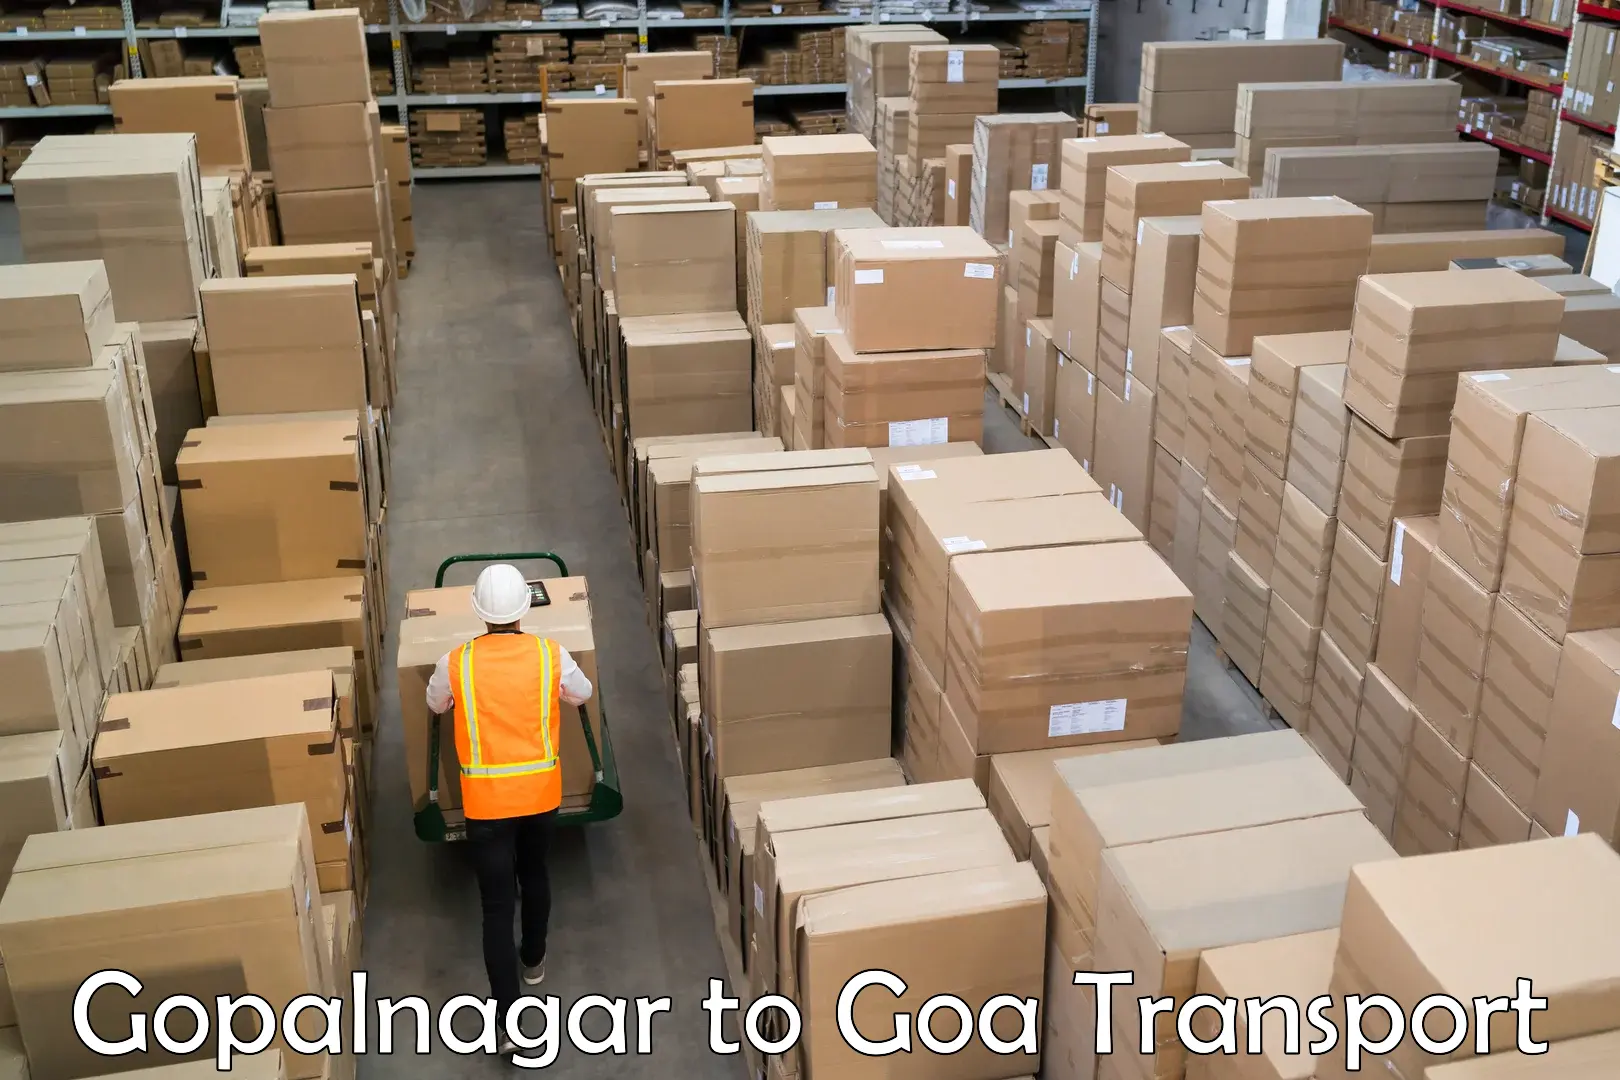 Online transport service Gopalnagar to Goa